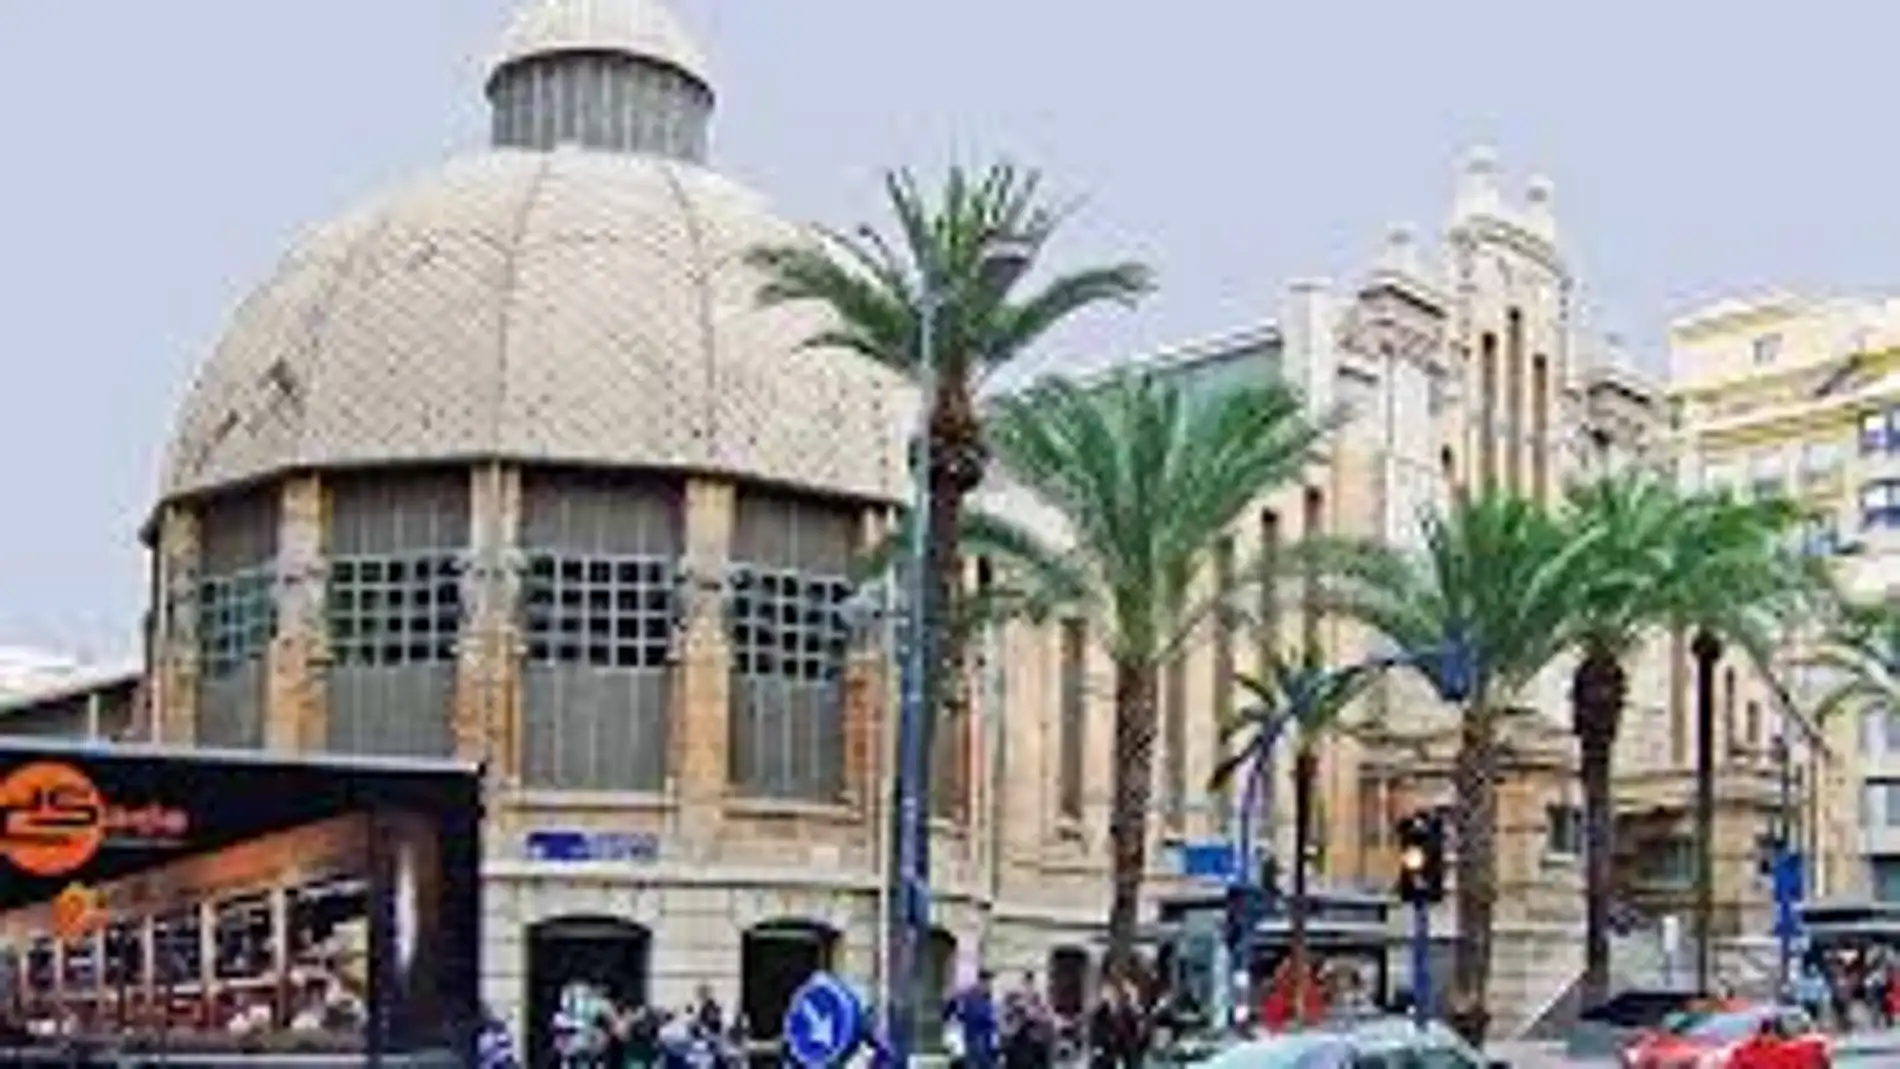 Mercado Central de Alicante en la Avenida de Alfonso X "el Sabio"